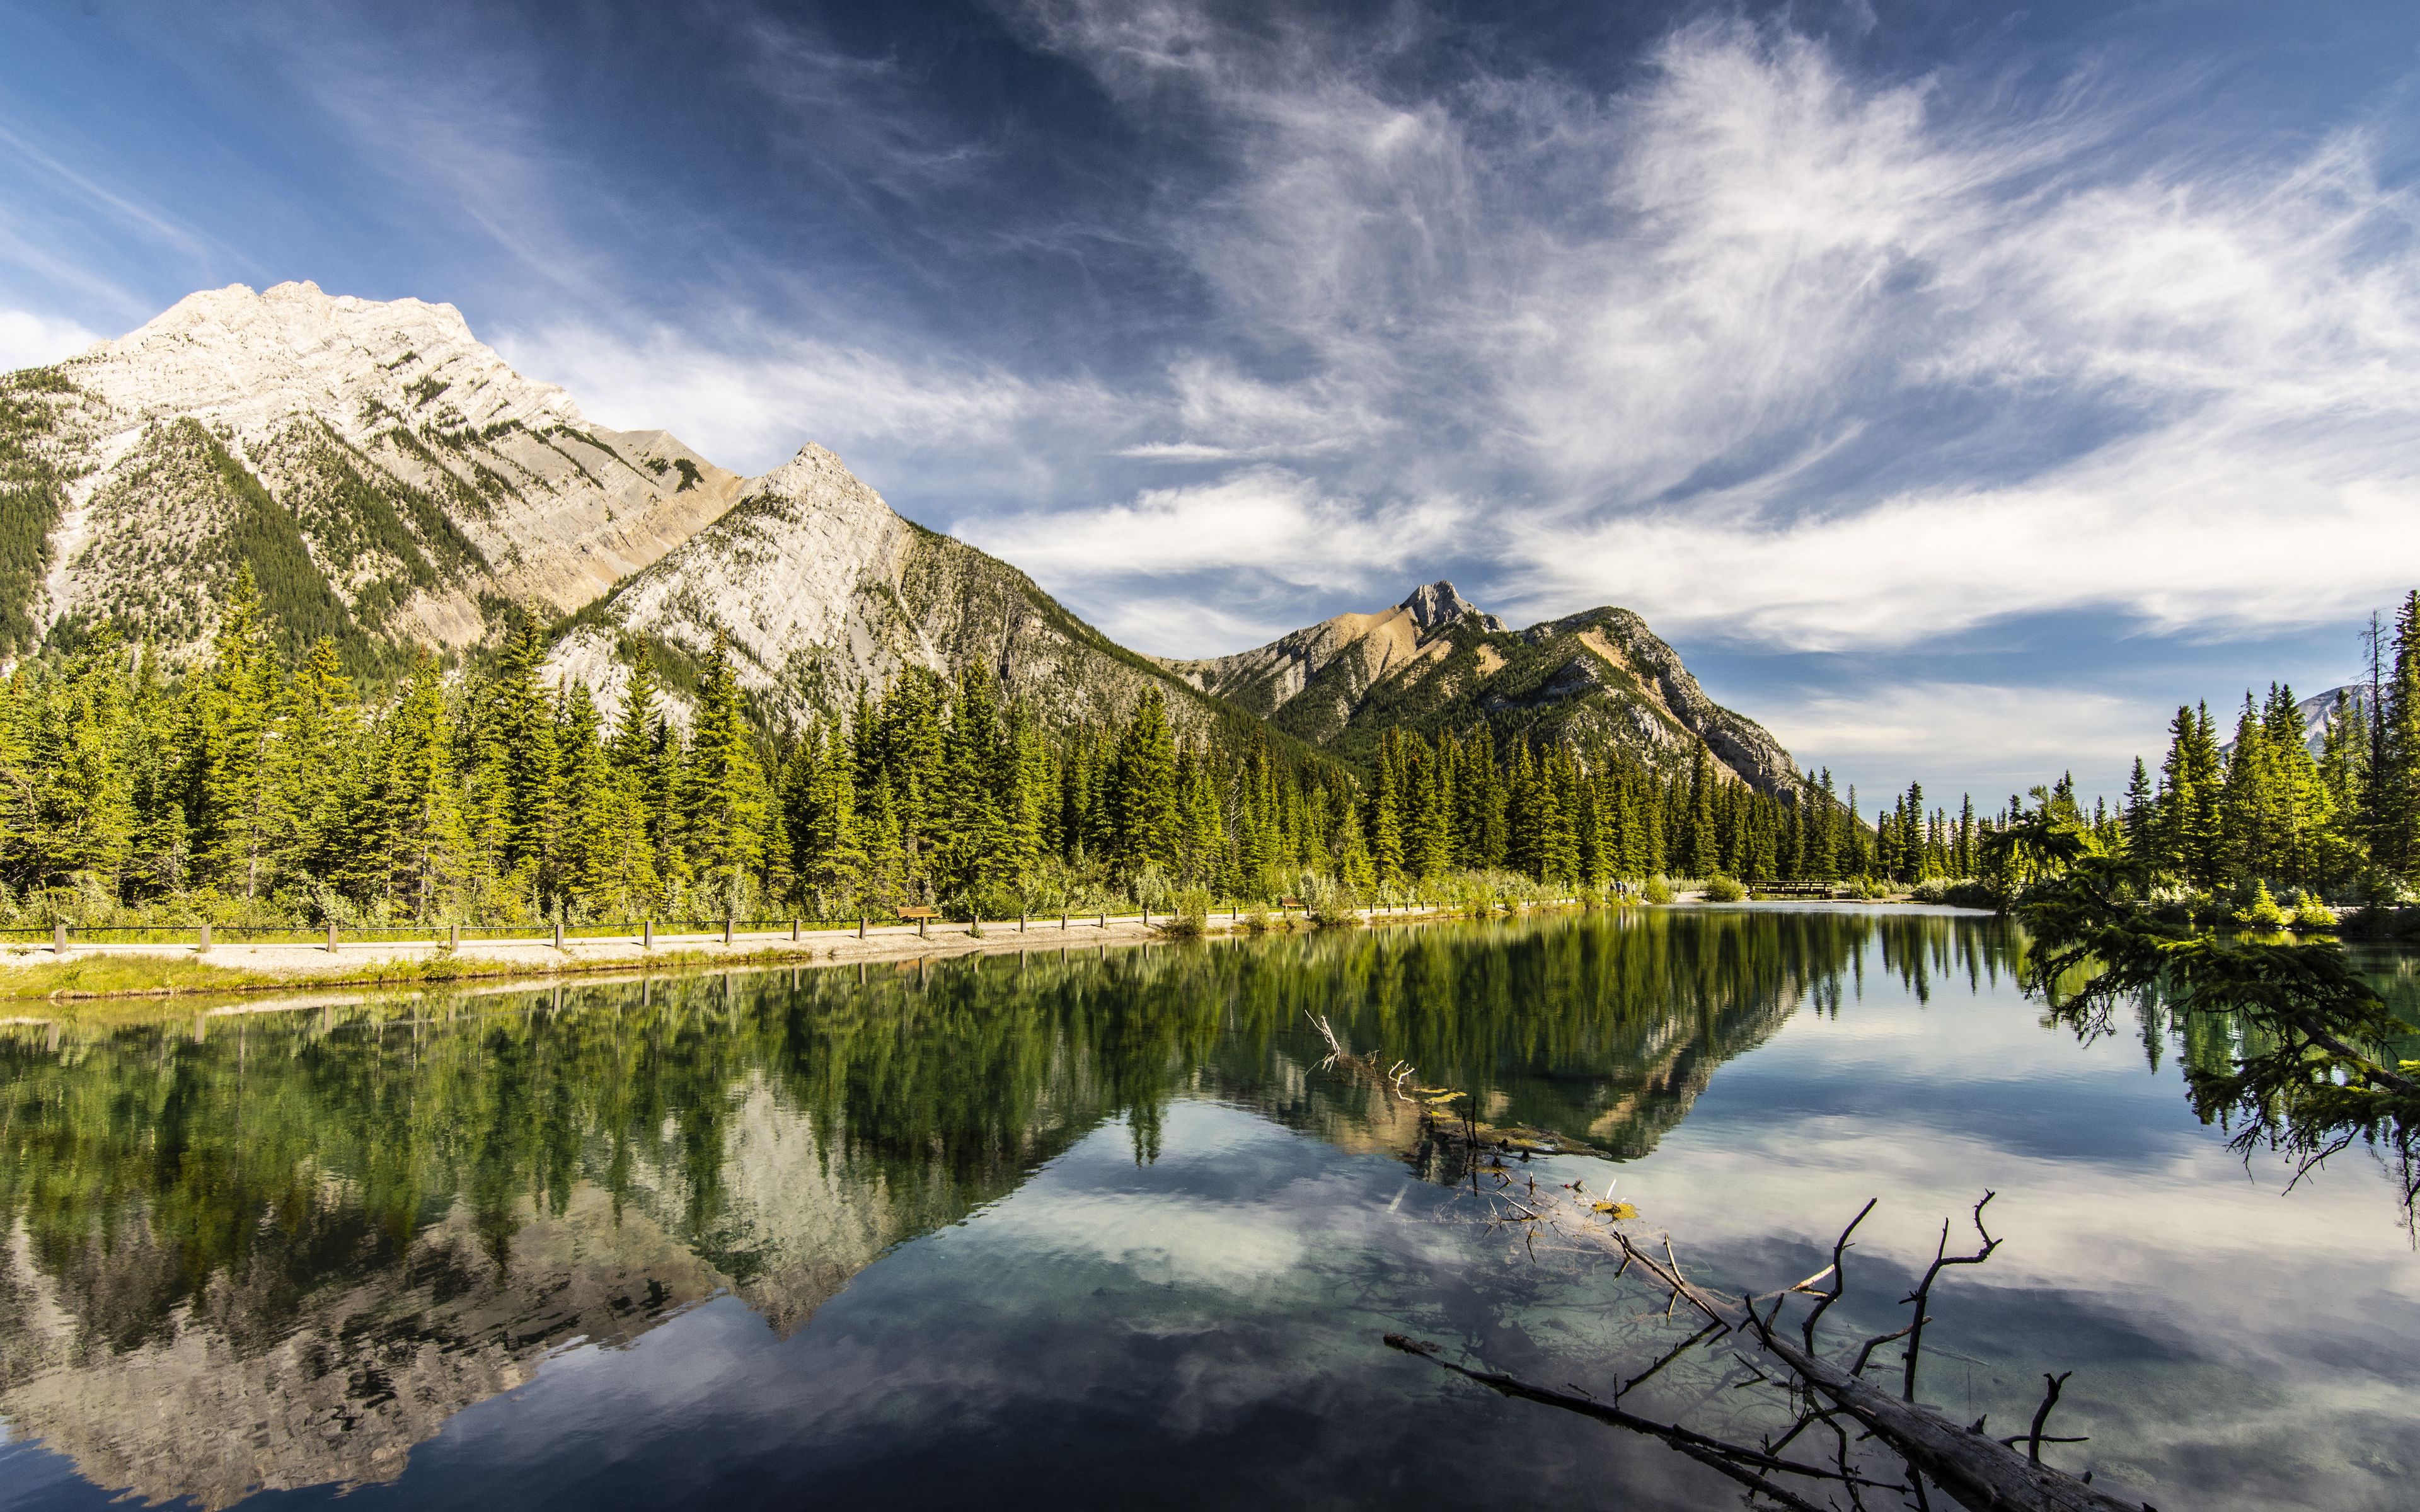 Fondos de pantalla Bosque y montaña reflejados en lago